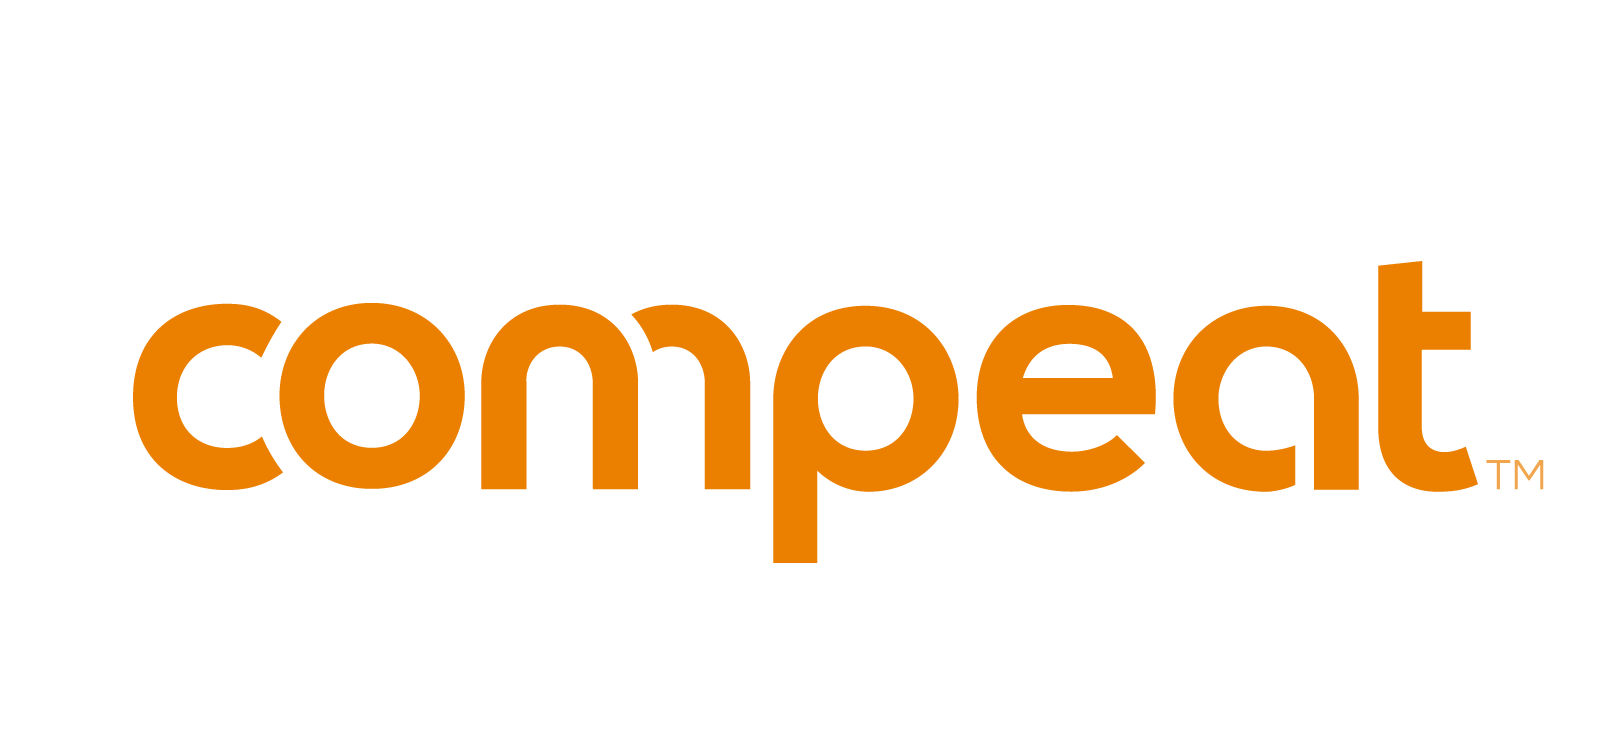 Compeat